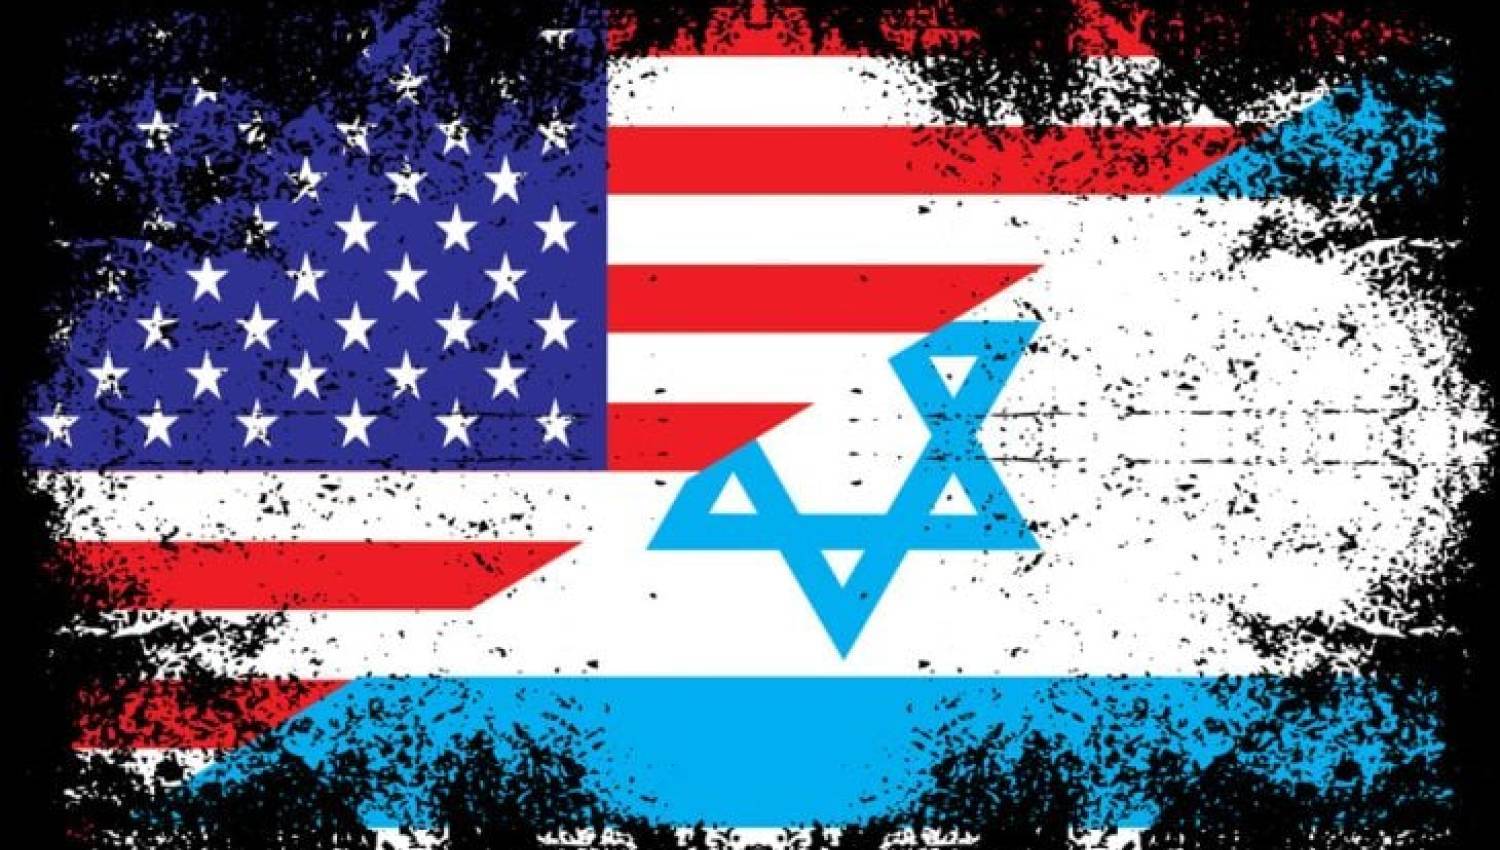 אמריקה וישראל: פיתרון פוליטי או החלטה צבאית